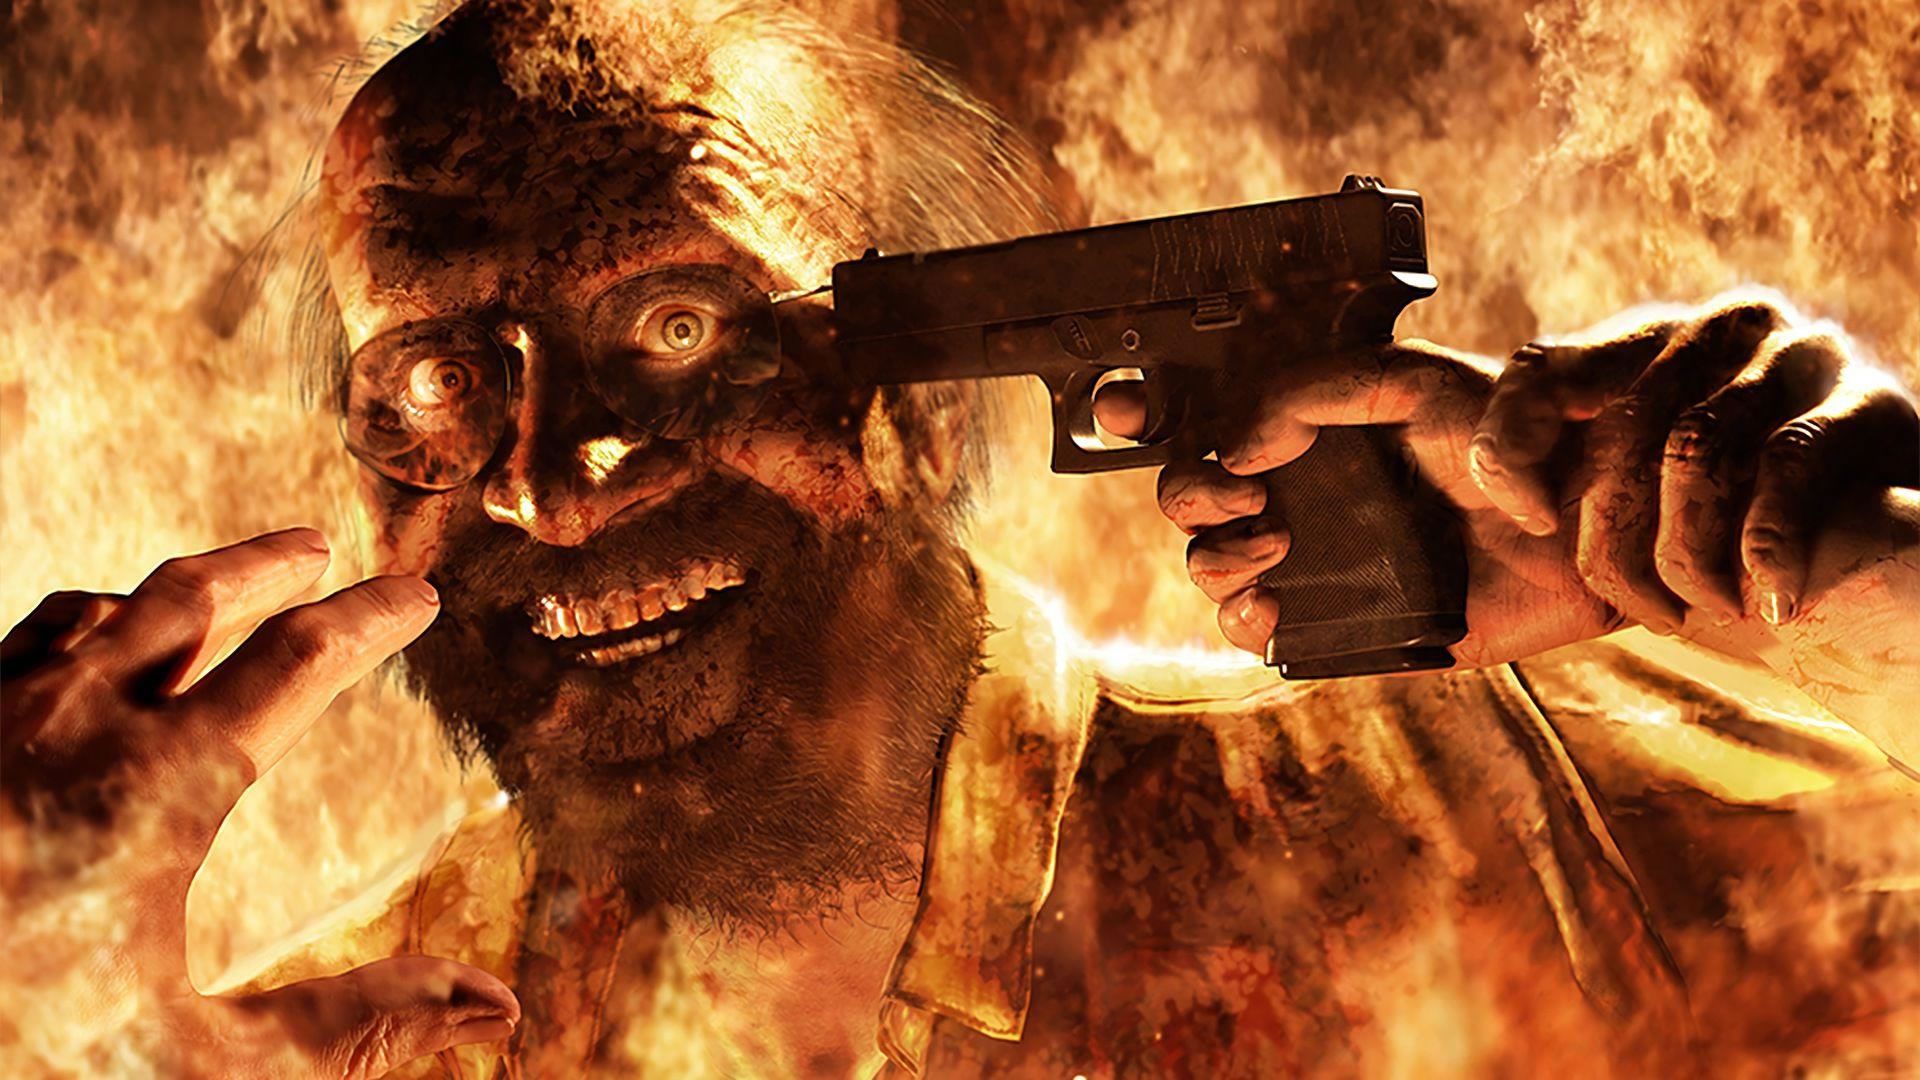 Os 20 melhores jogos de terror multiplayer para jogar agora!